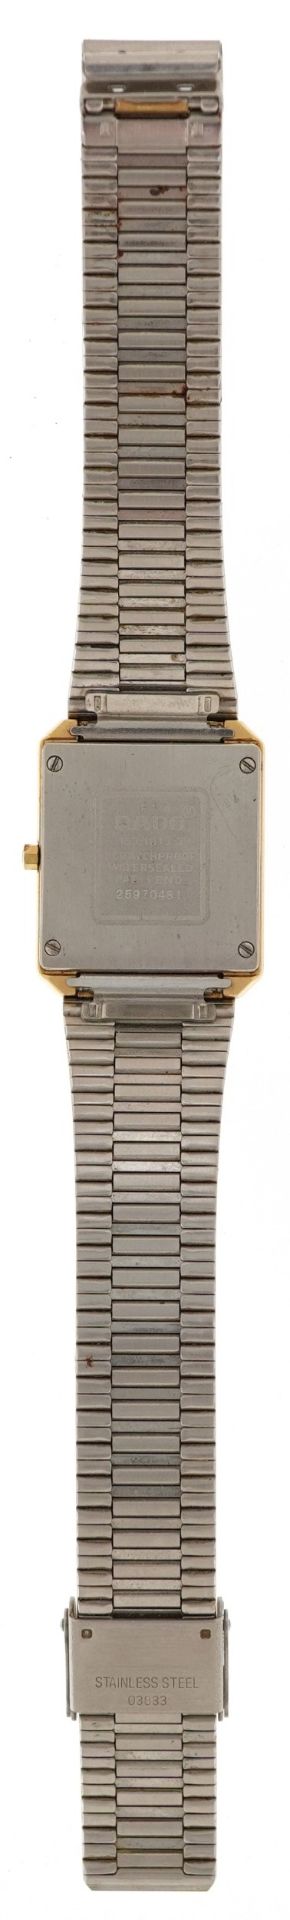 Rado, ladies Rado Diastar quartz wristwatch with mirrored bezel, the case numbered 25970481, 25mm - Bild 3 aus 5